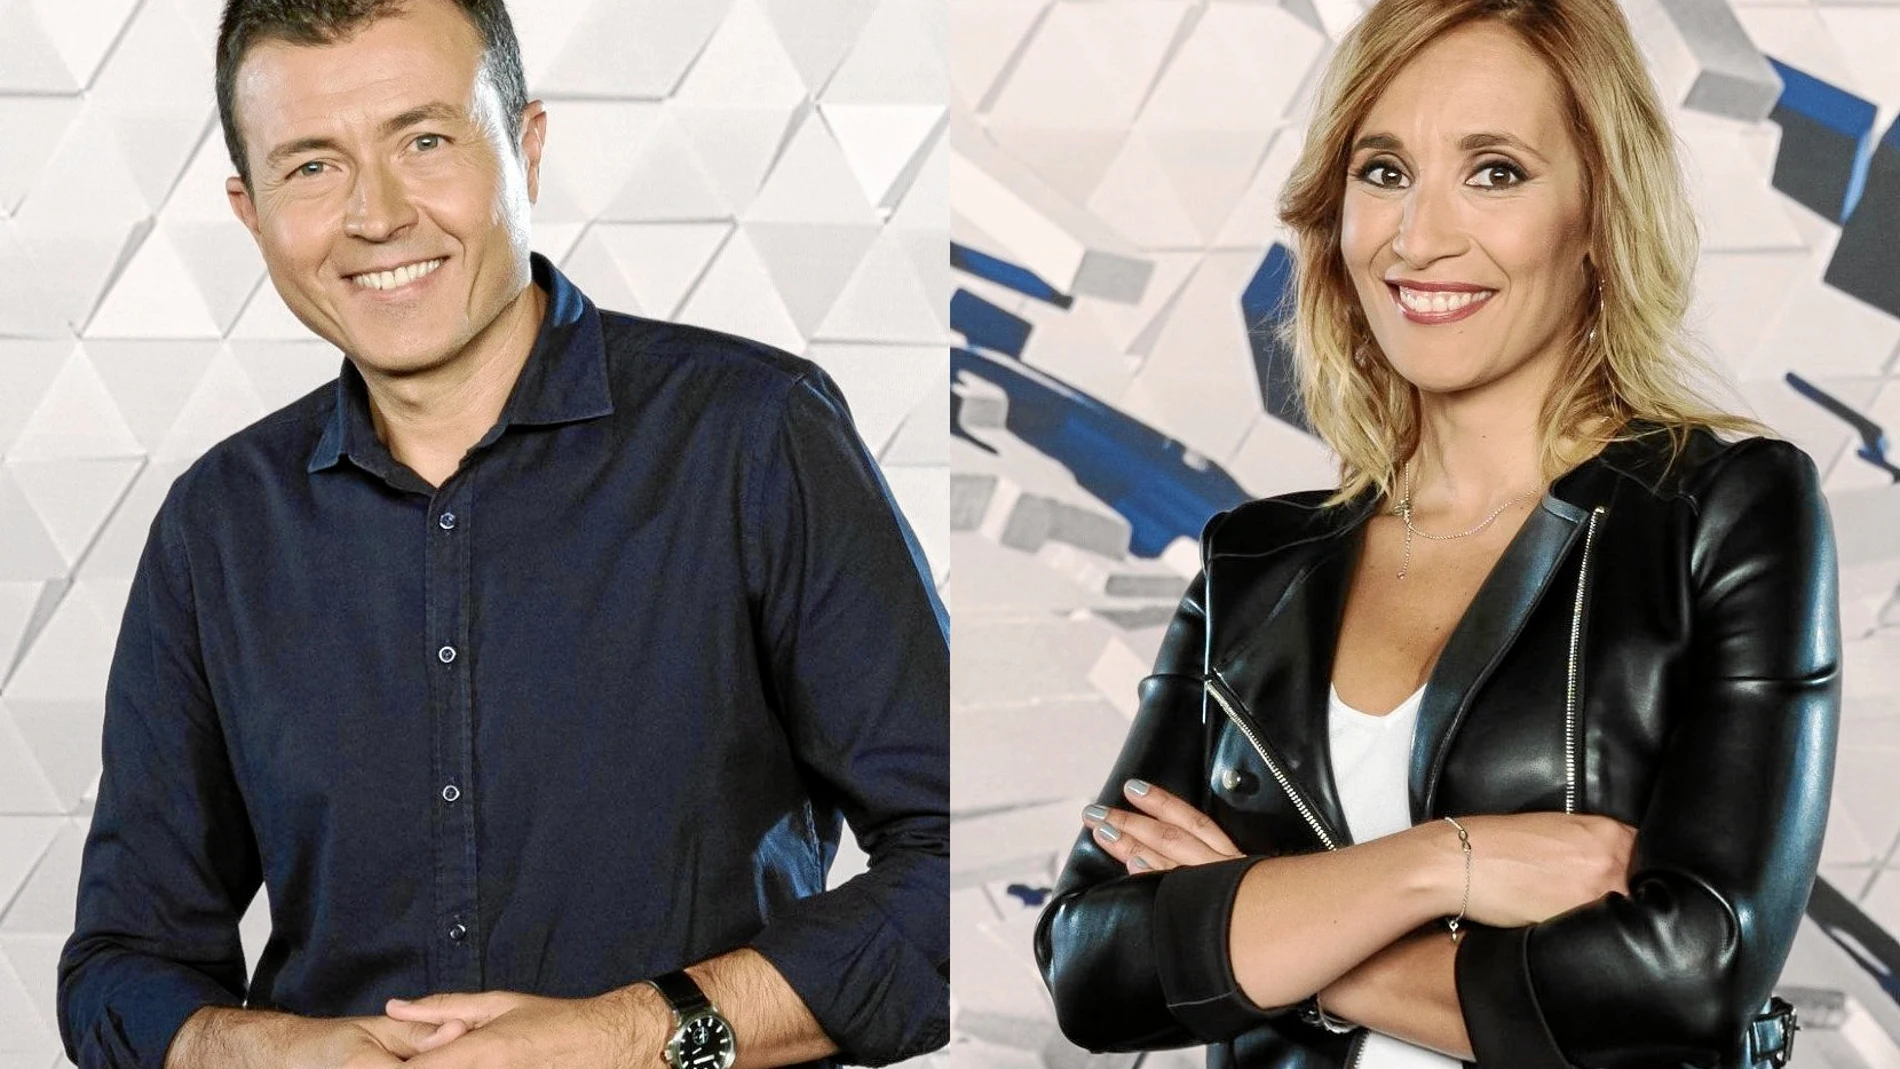 Manu Sánchez y Rocío Martinez, presentadores de los deportes de Antena 3 / Atresmedia